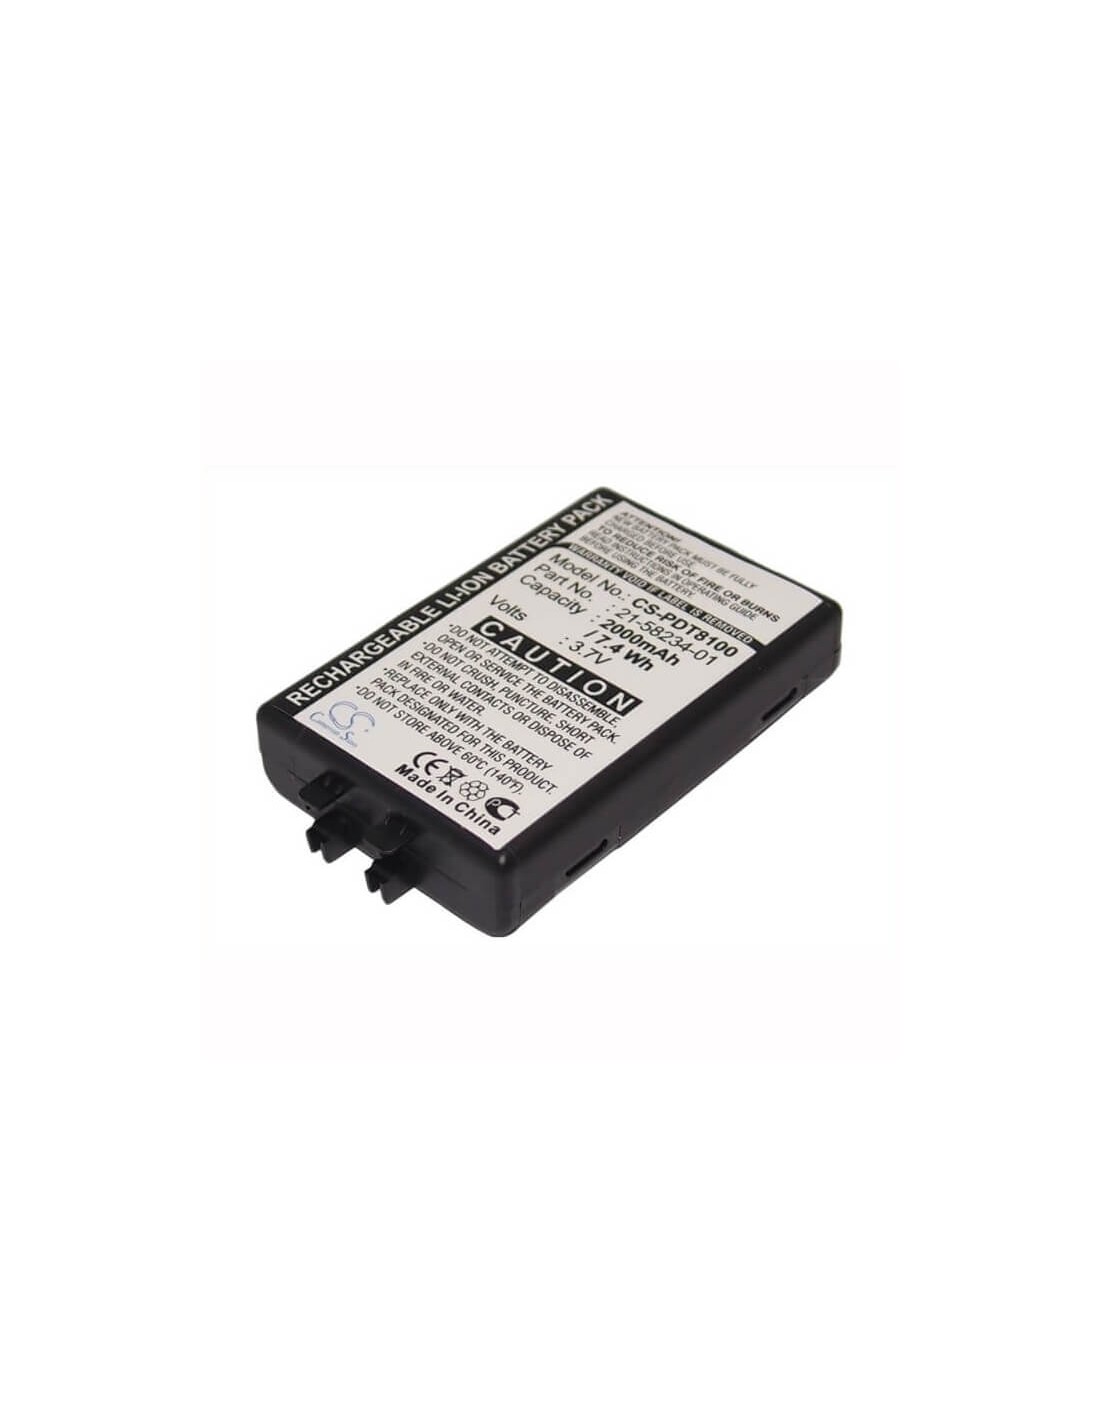 Battery for Symbol Pdt8100, Pdt8133, Pdt8137 3.7V, 2000mAh - 7.40Wh